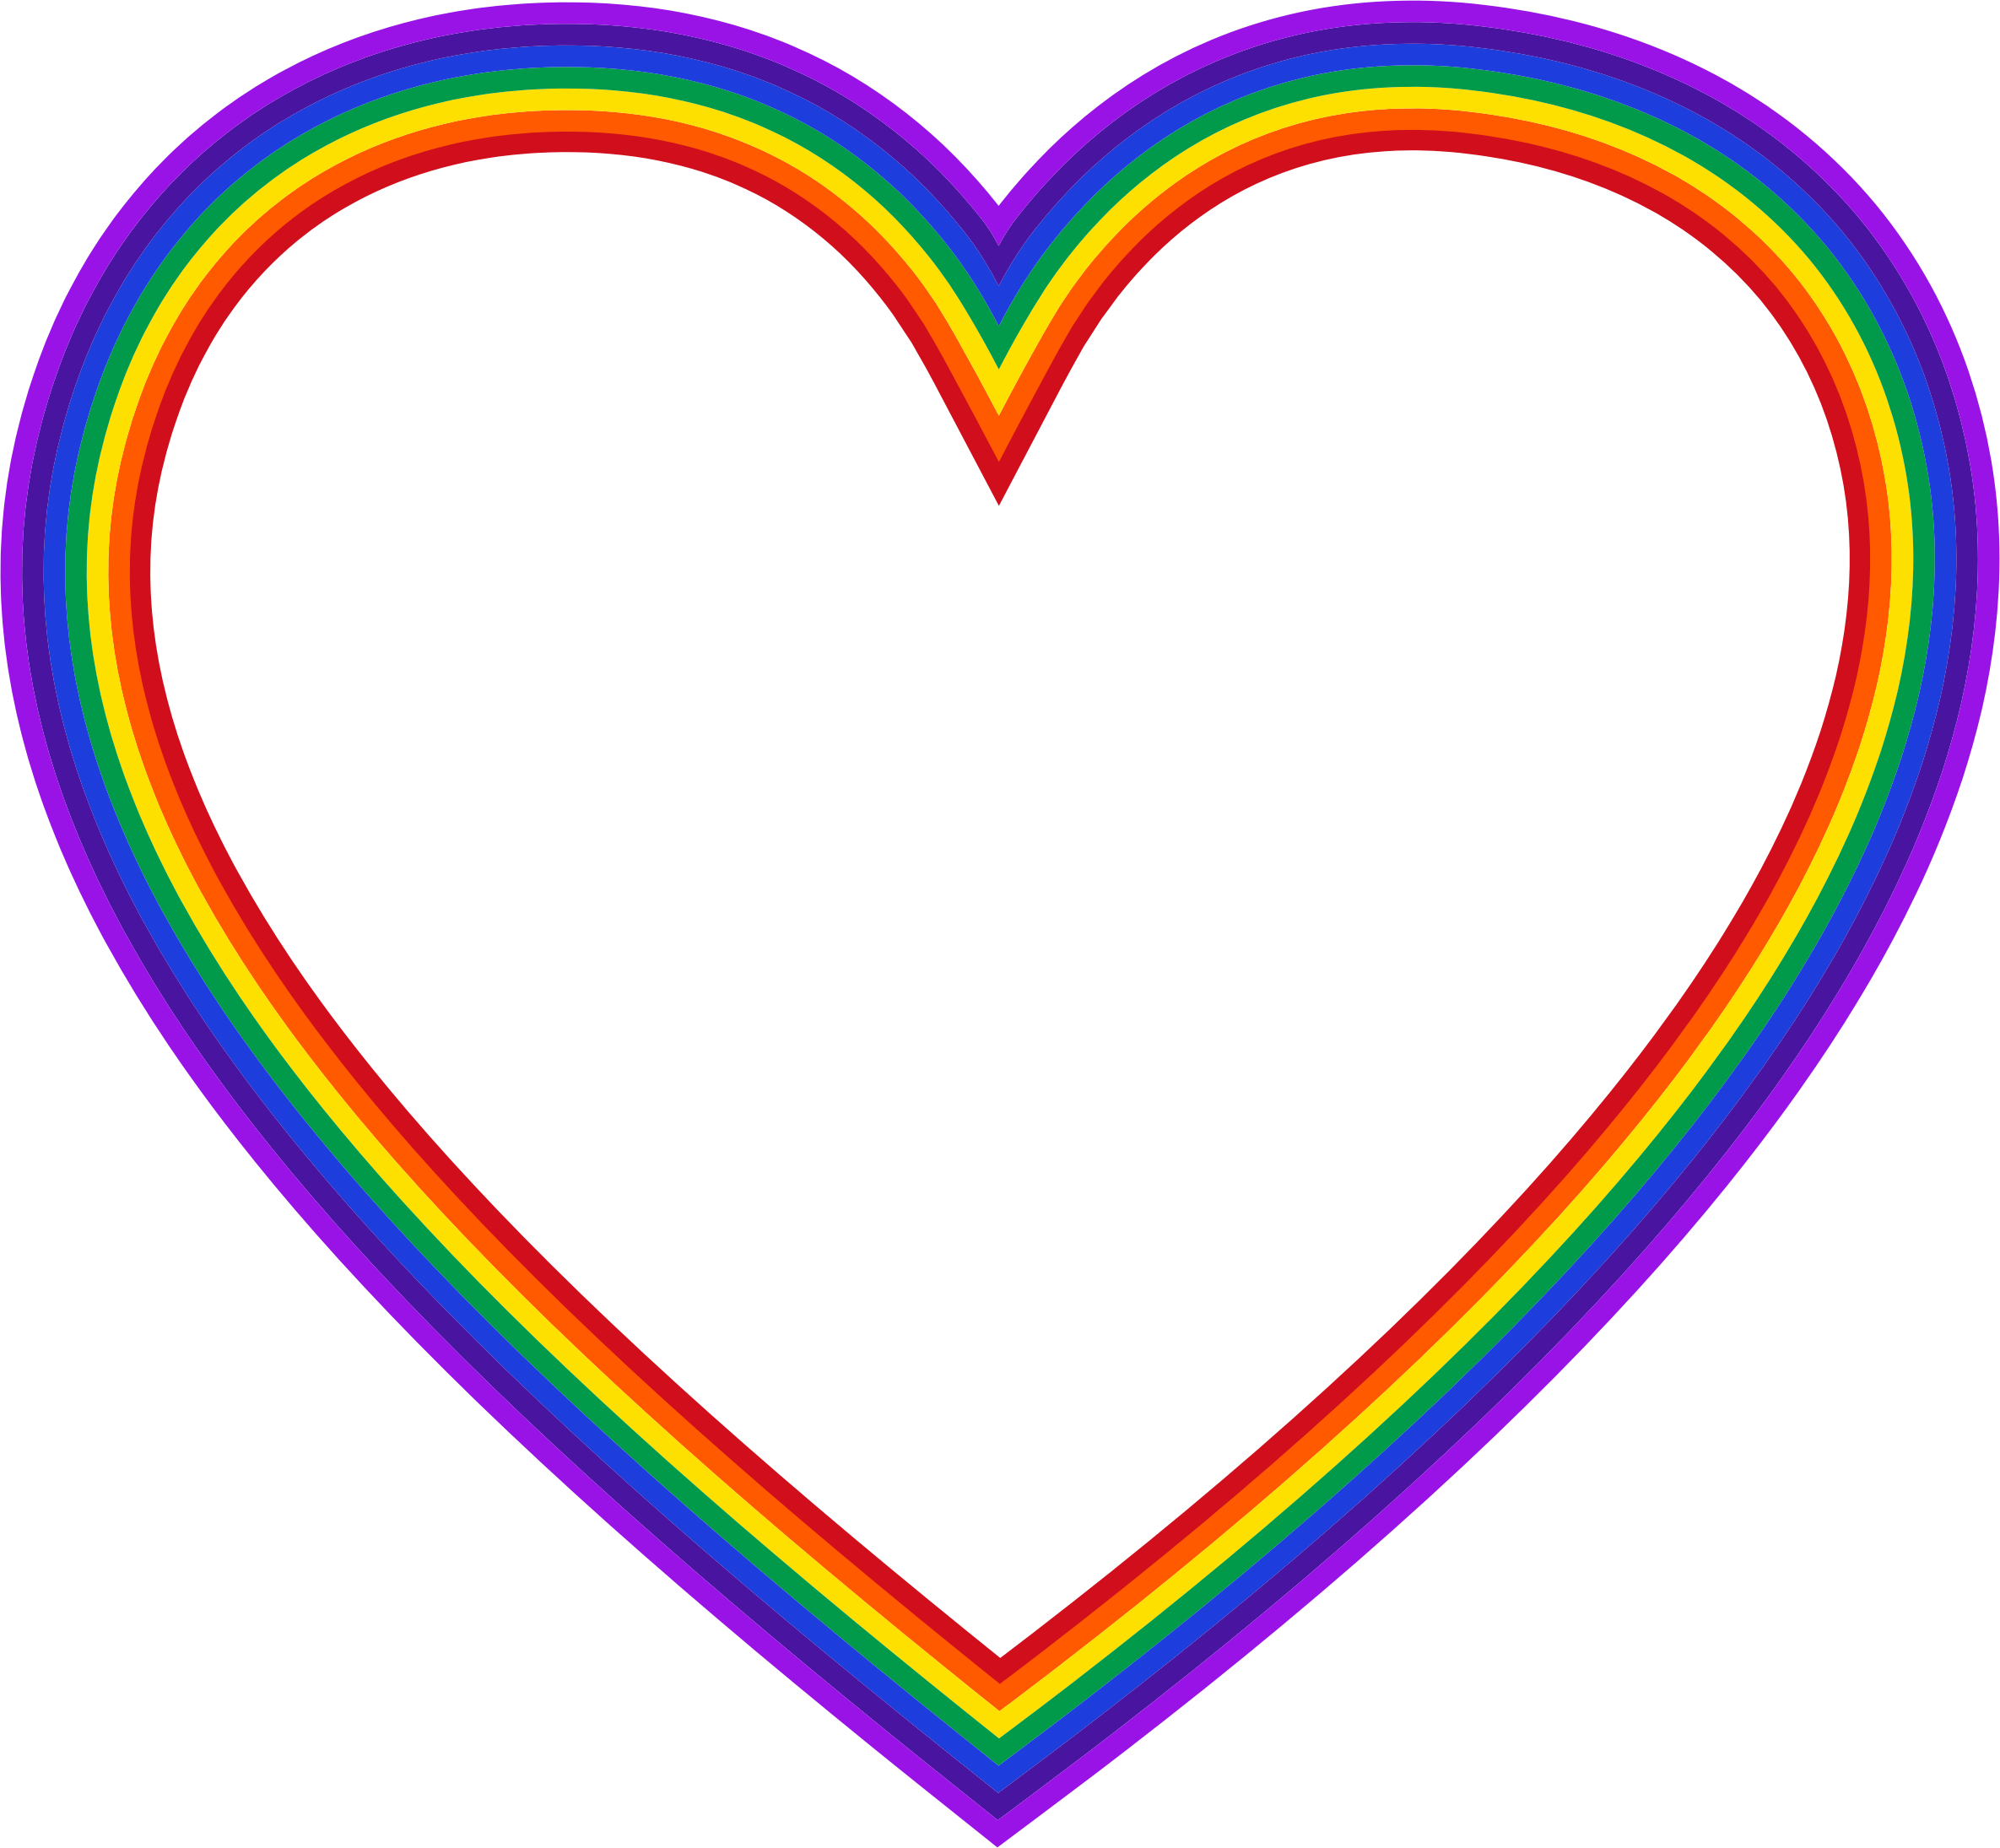 Rainbow heart clipart